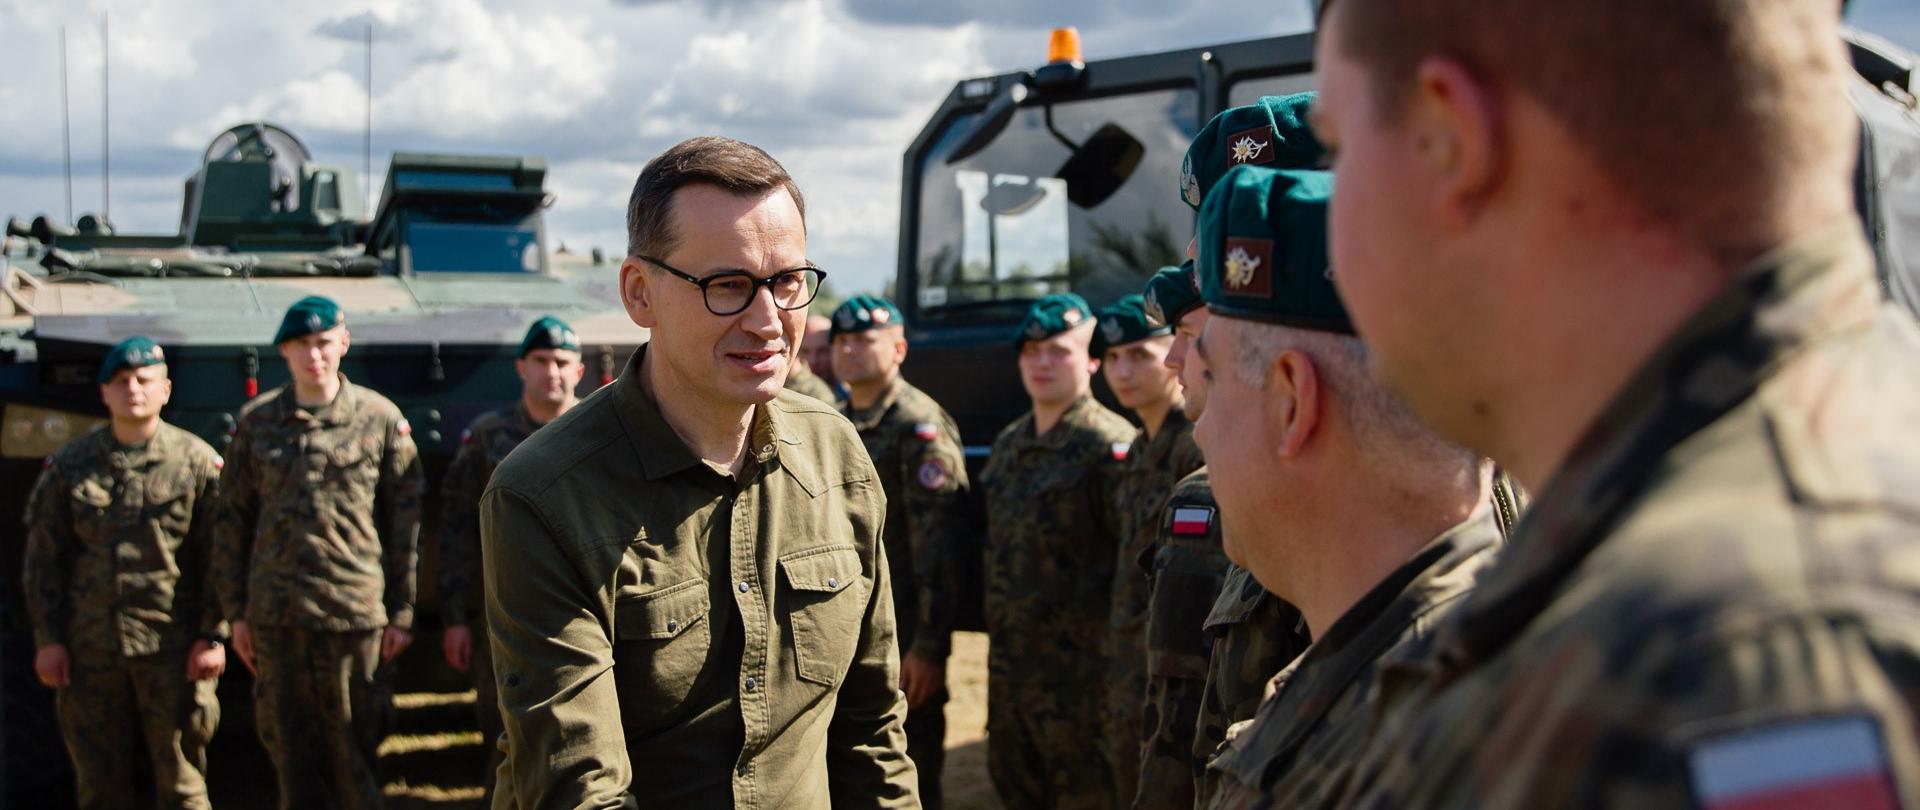 Premier Mateusz Morawiecki podczas spotkania z mieszkańcami Sutna i żołnierzami.